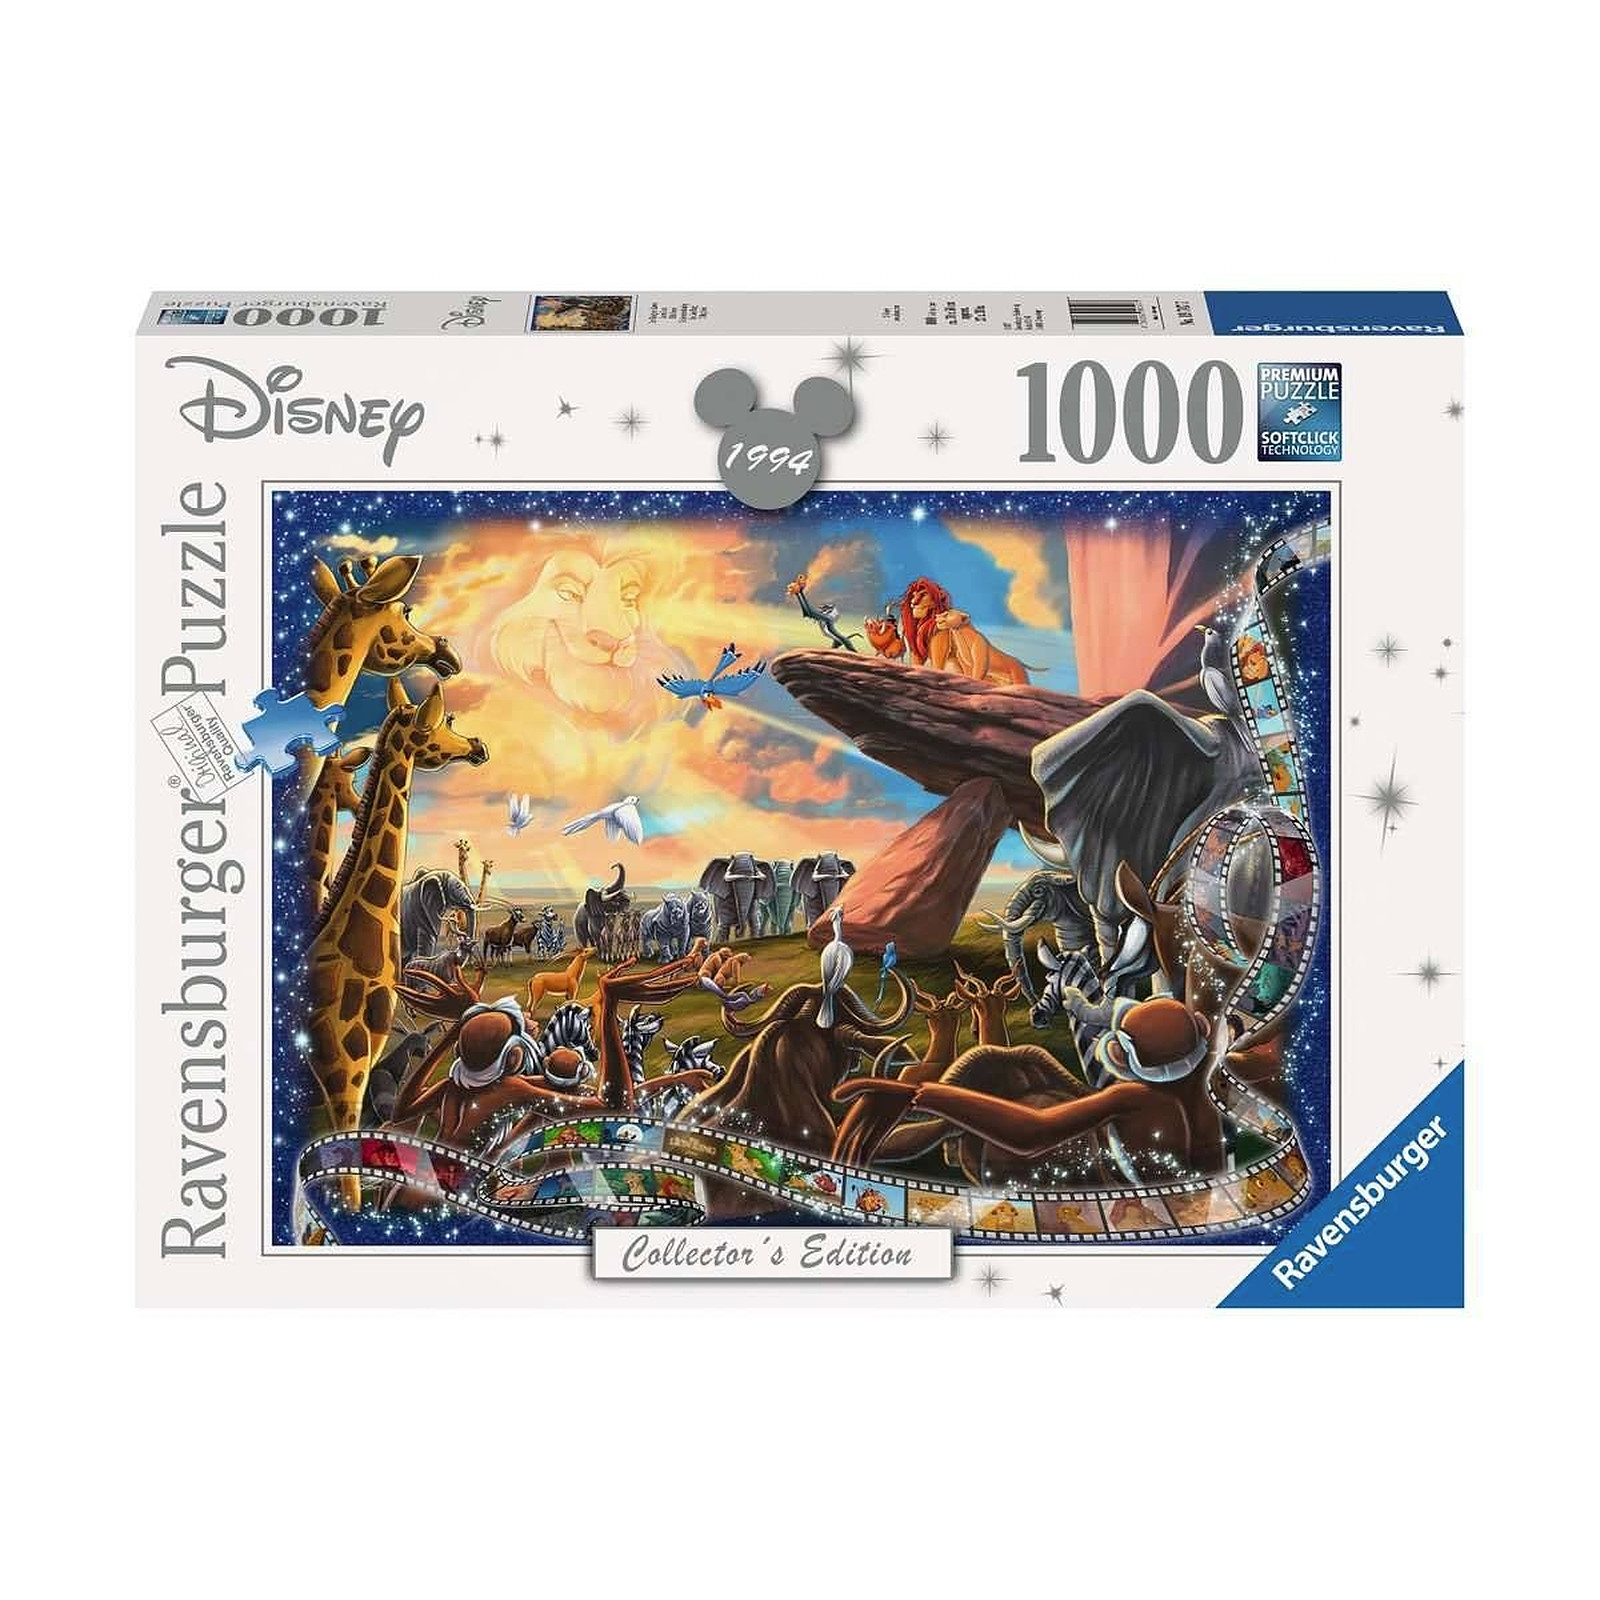 Disney - Puzzle Le Roi lion Collector's Edition (1000 pièces) - Puzzle Ravensburger